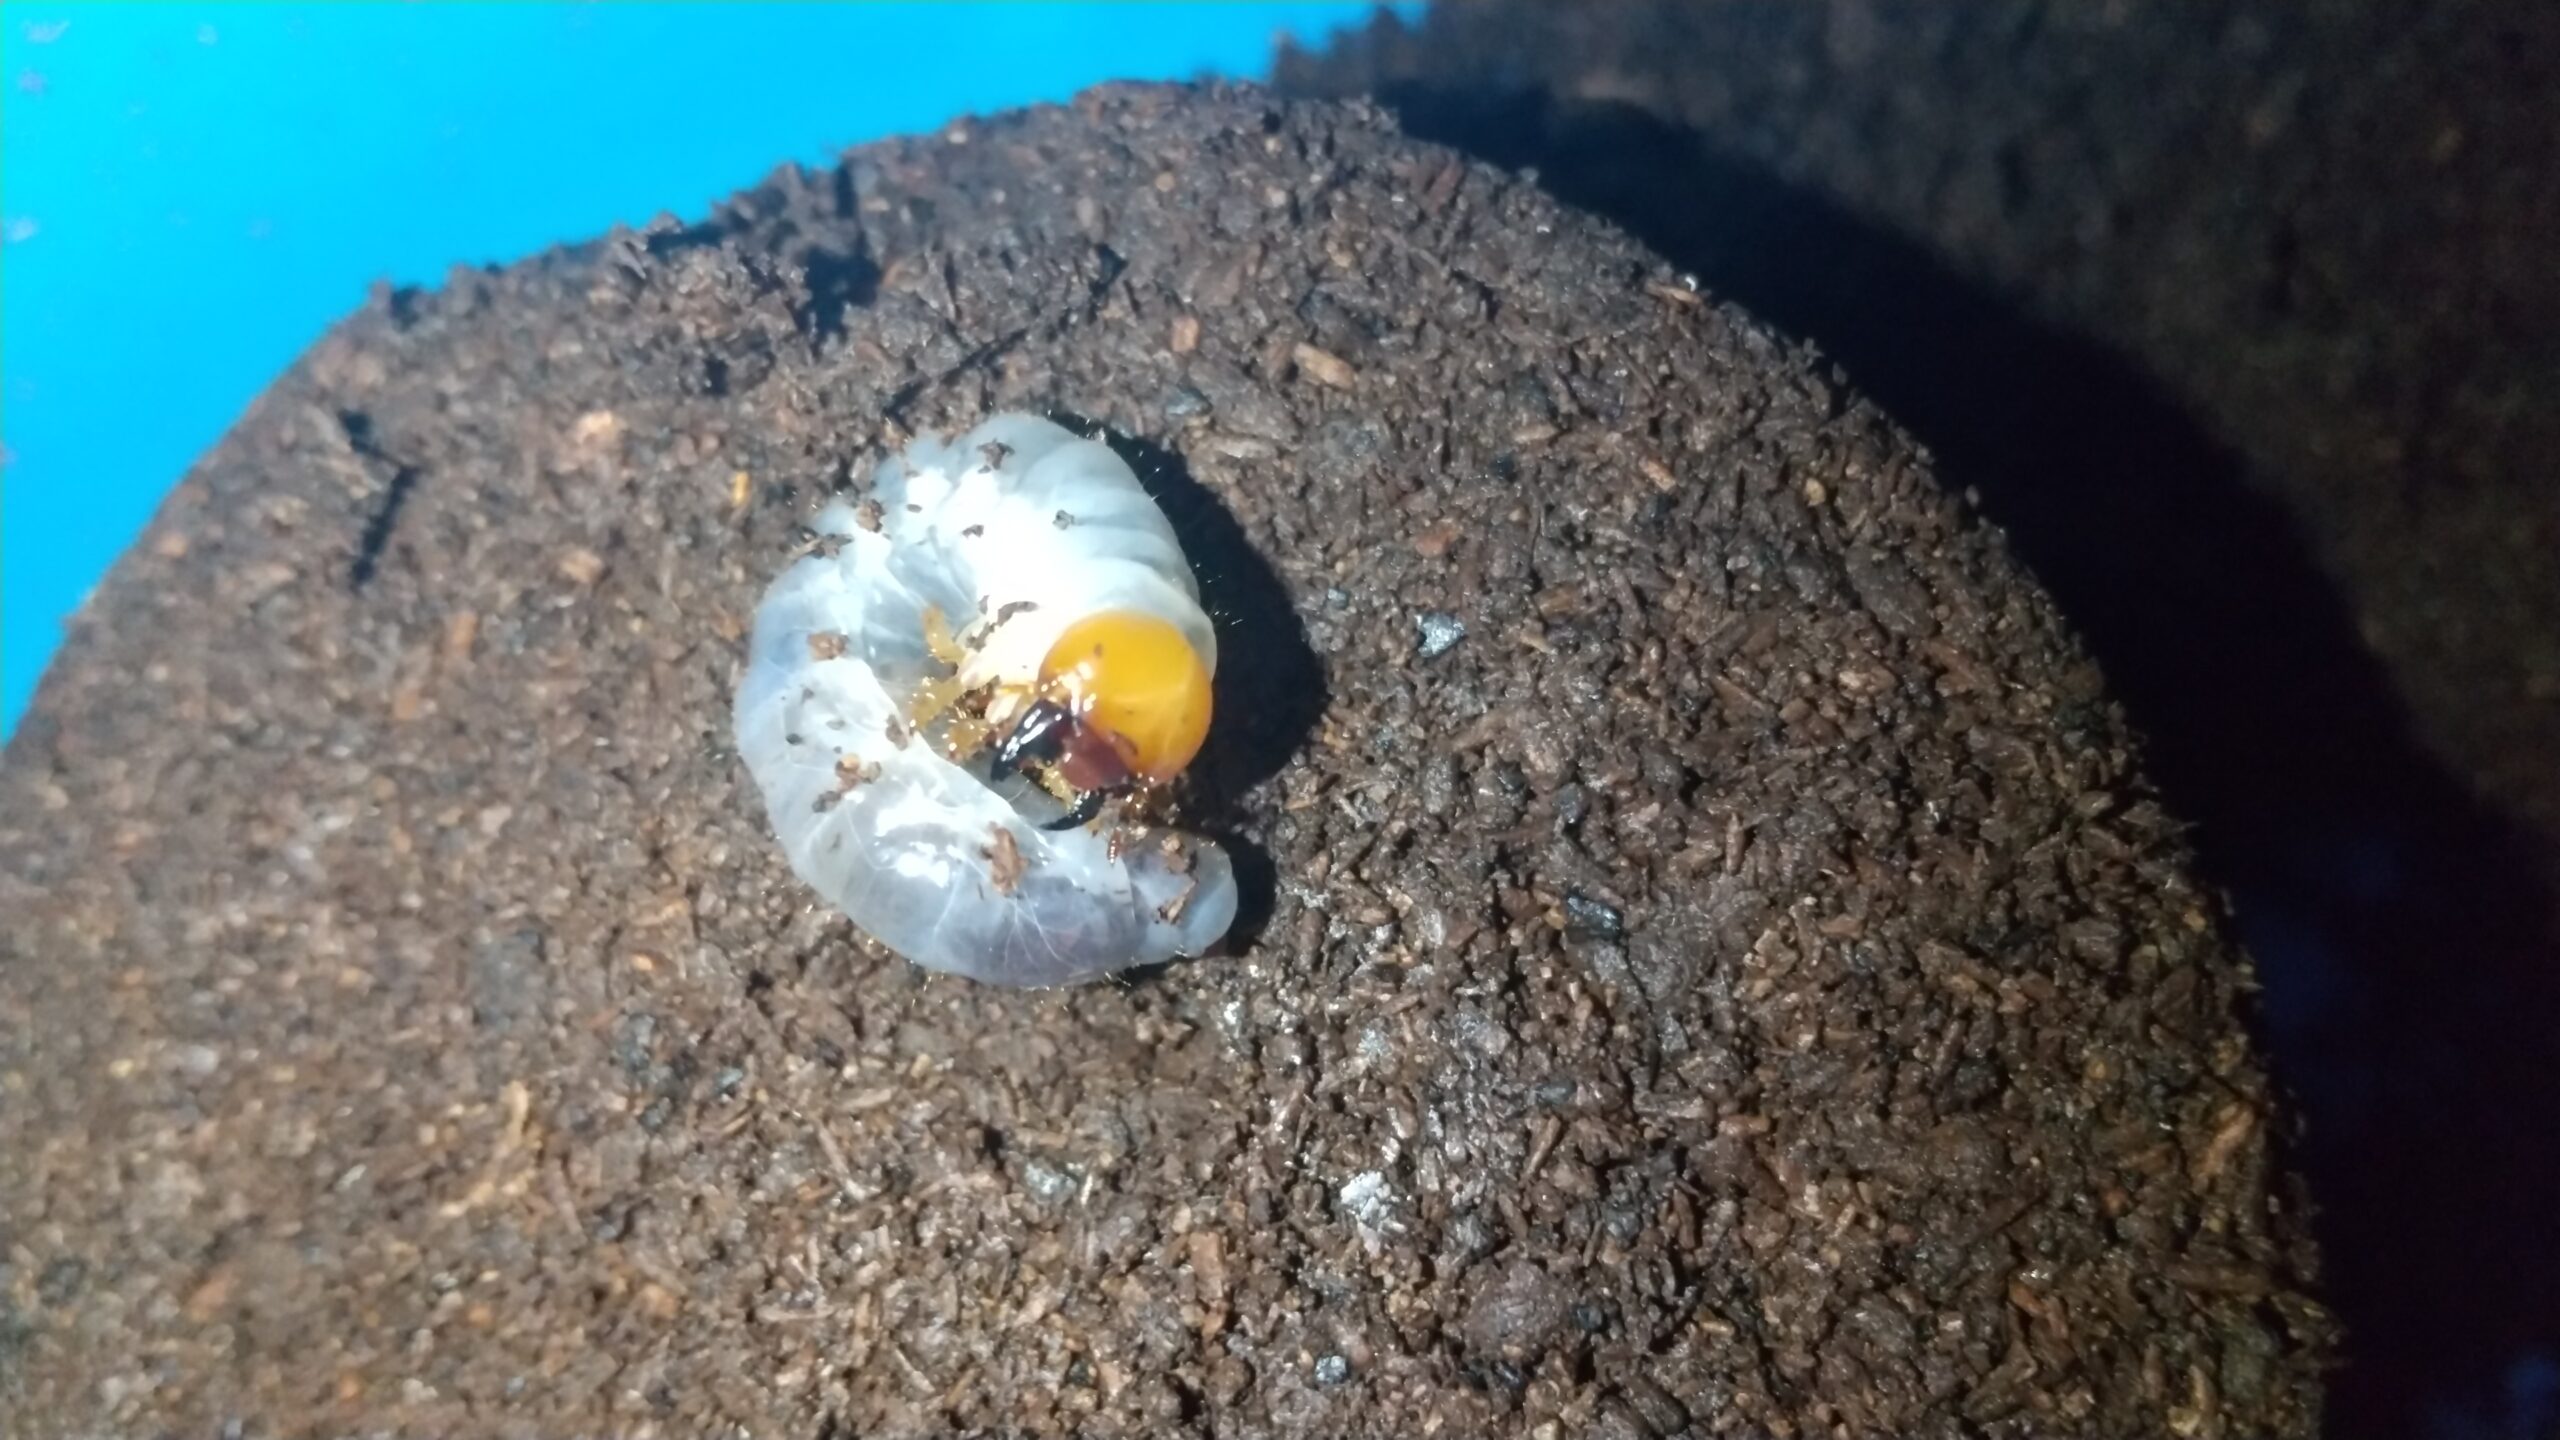 孵化後4か月のミヤマクワガタの幼虫をプリンカップからマットボトルに移す